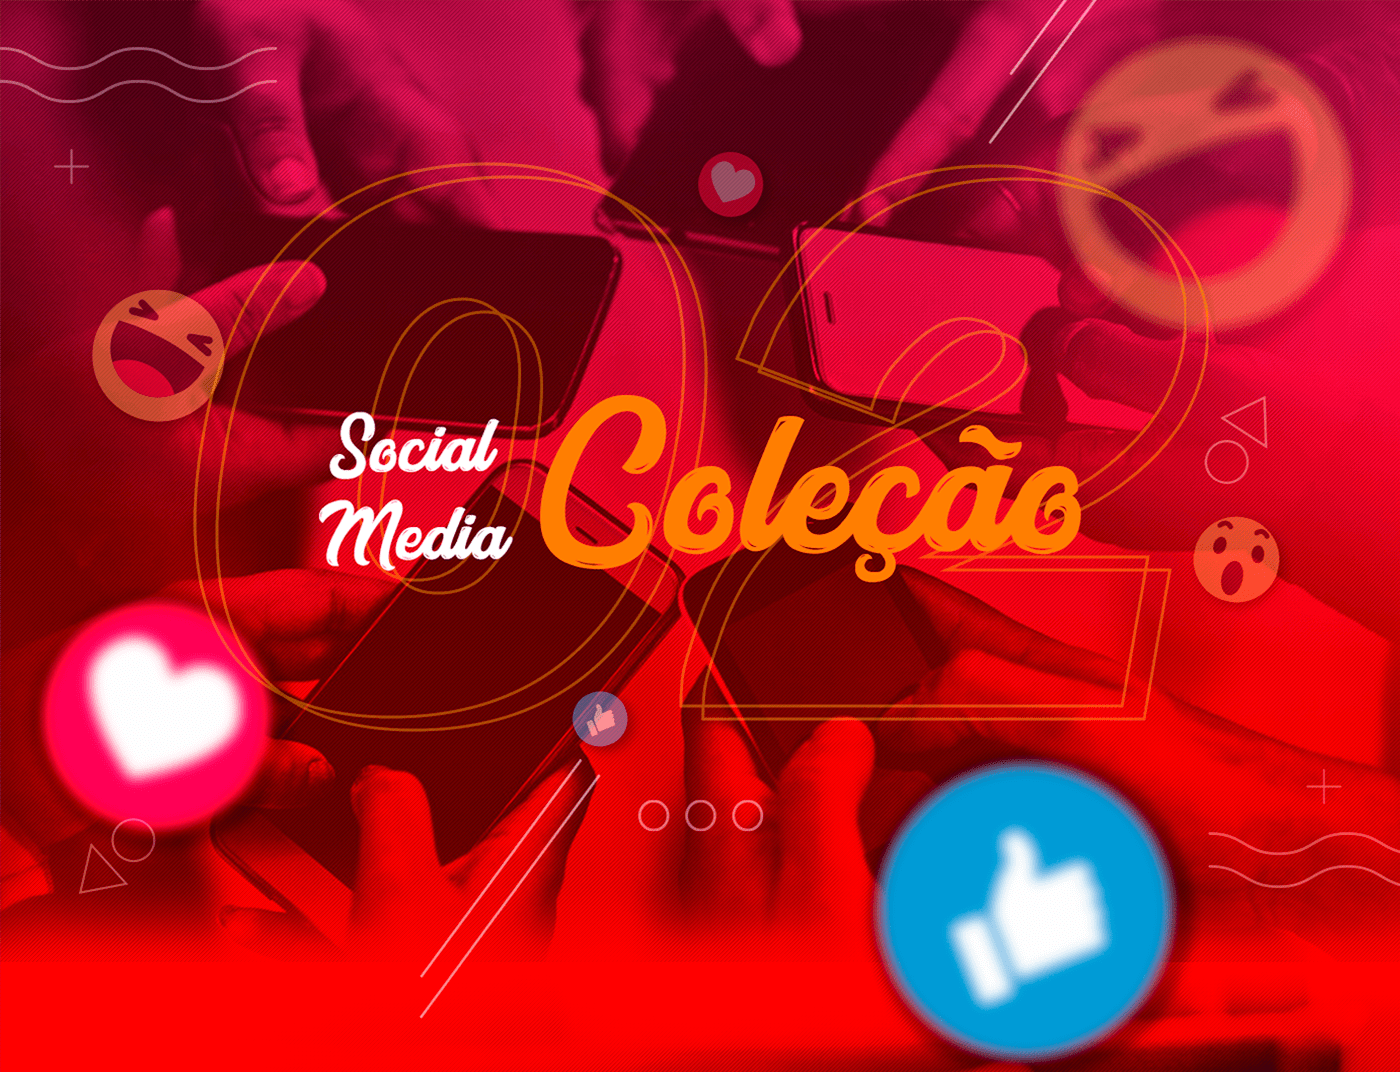 design design gráfico Design para posts design social media ideias social media posts design Posts Social Media social media Social Media Design Social media ideas